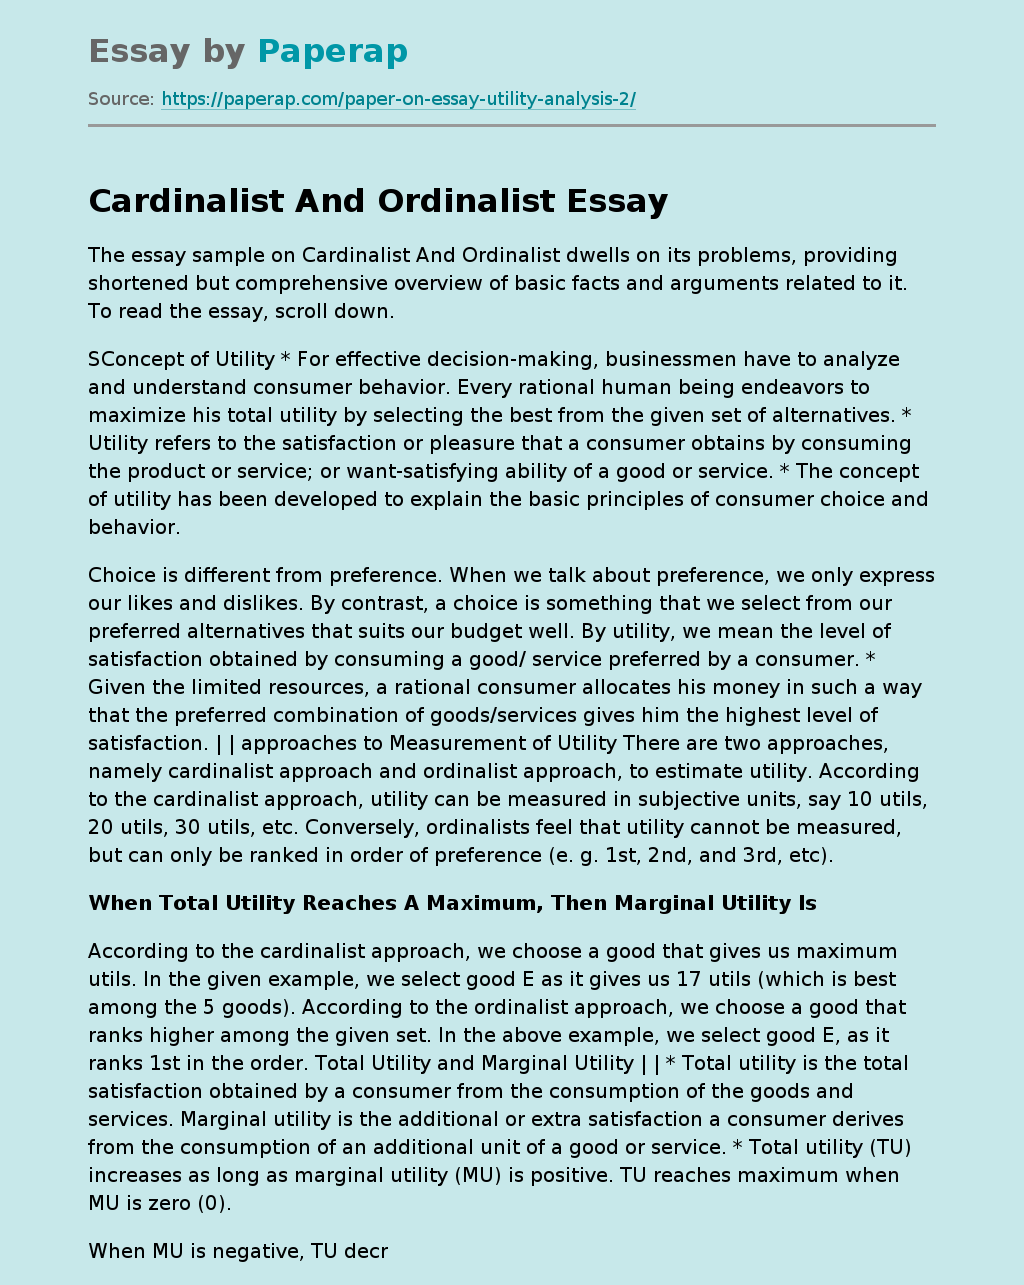 Essay Sample on Cardinalist and Ordinalist